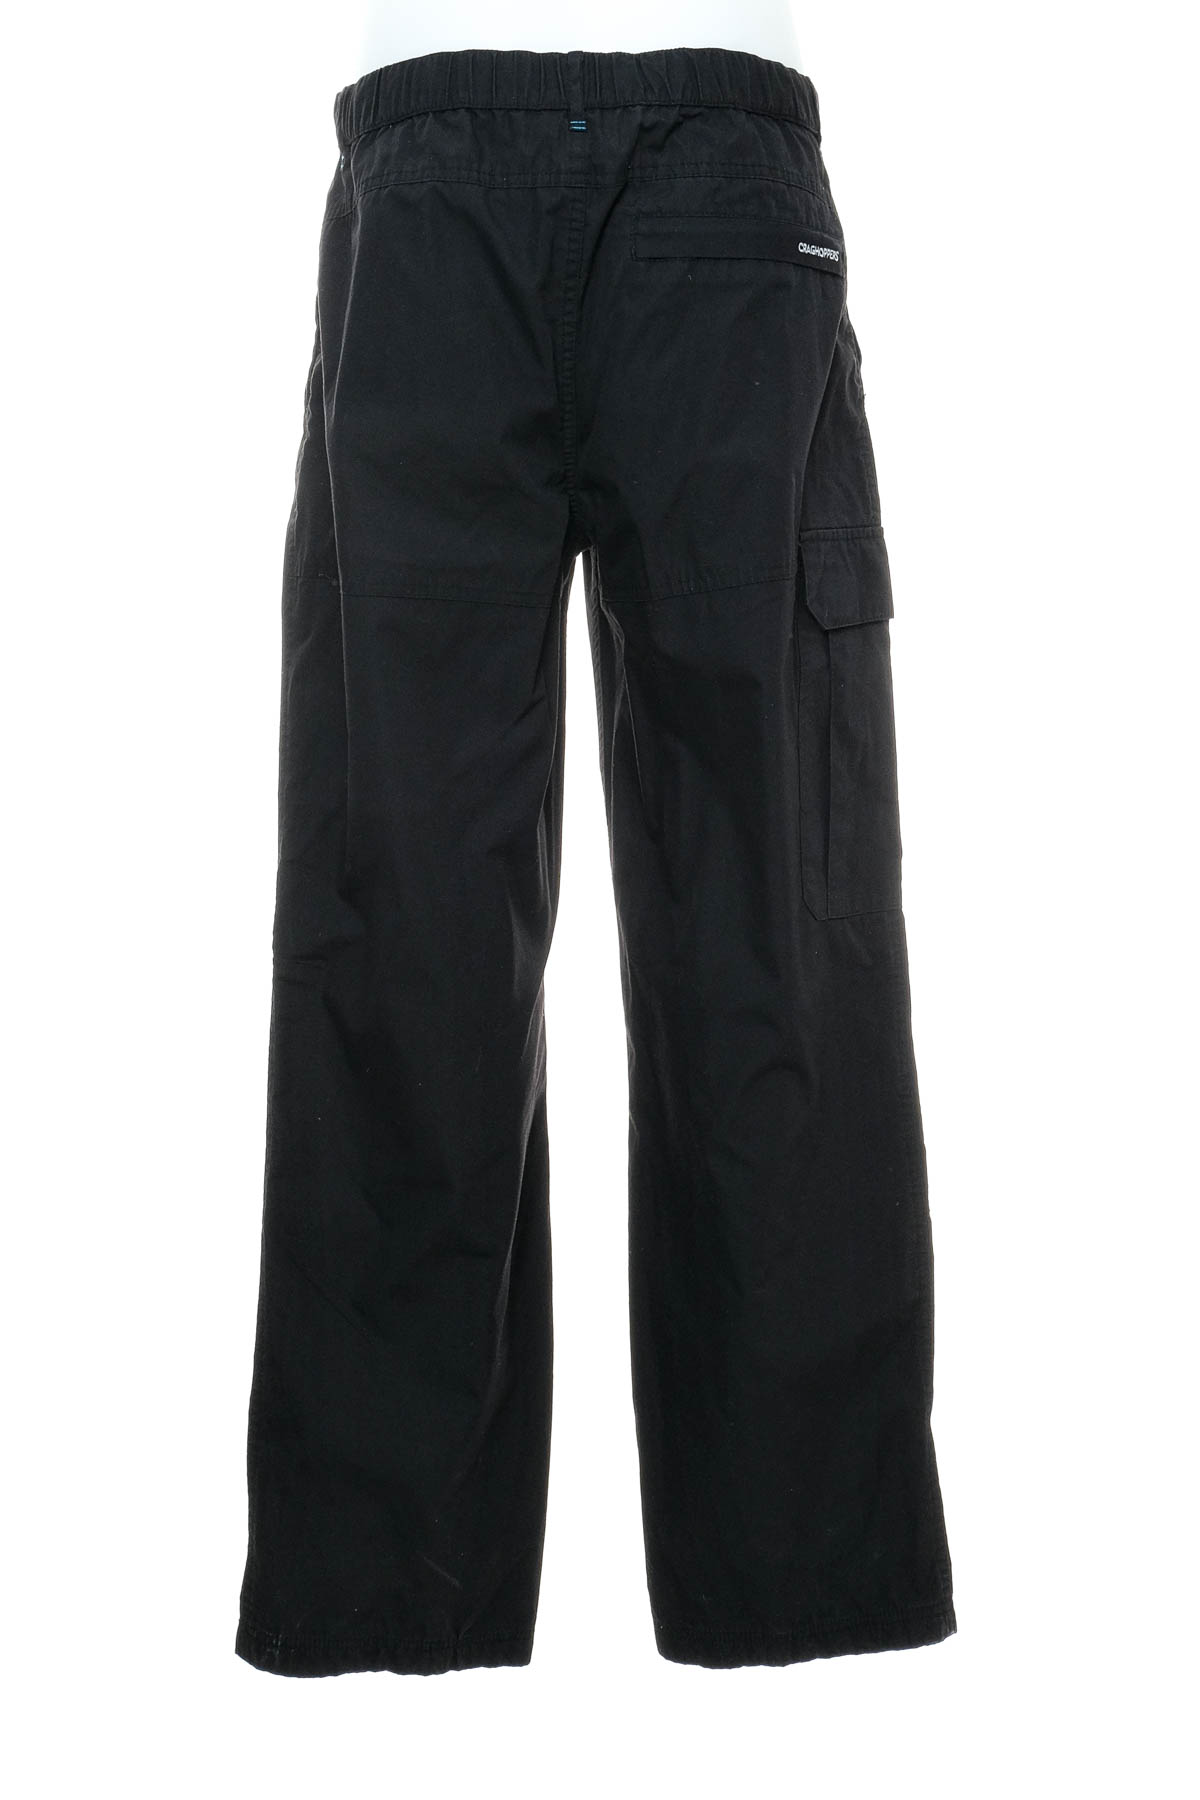 Pantalon pentru bărbați - CRAGHOPPERS - 1